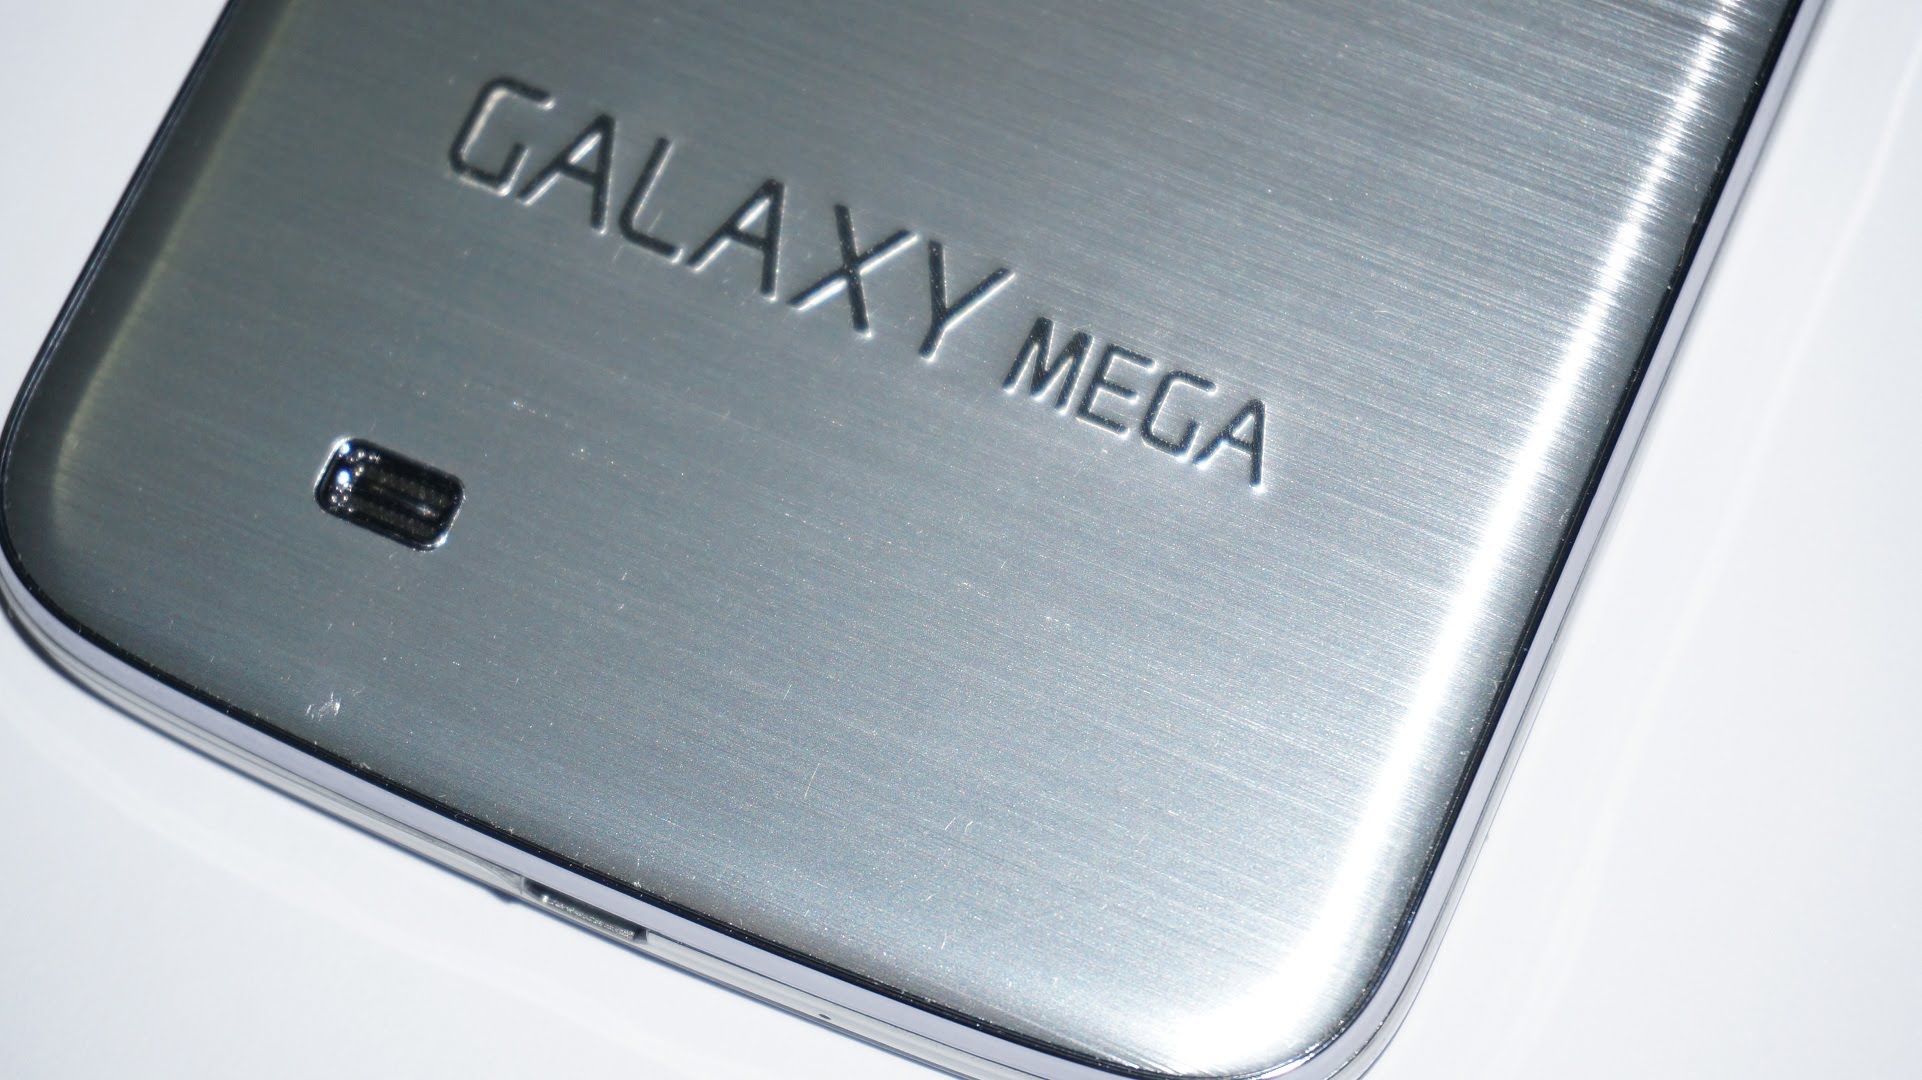 صور مسربة لهاتف Galaxy Mega 2 قبل الإعلان عنه